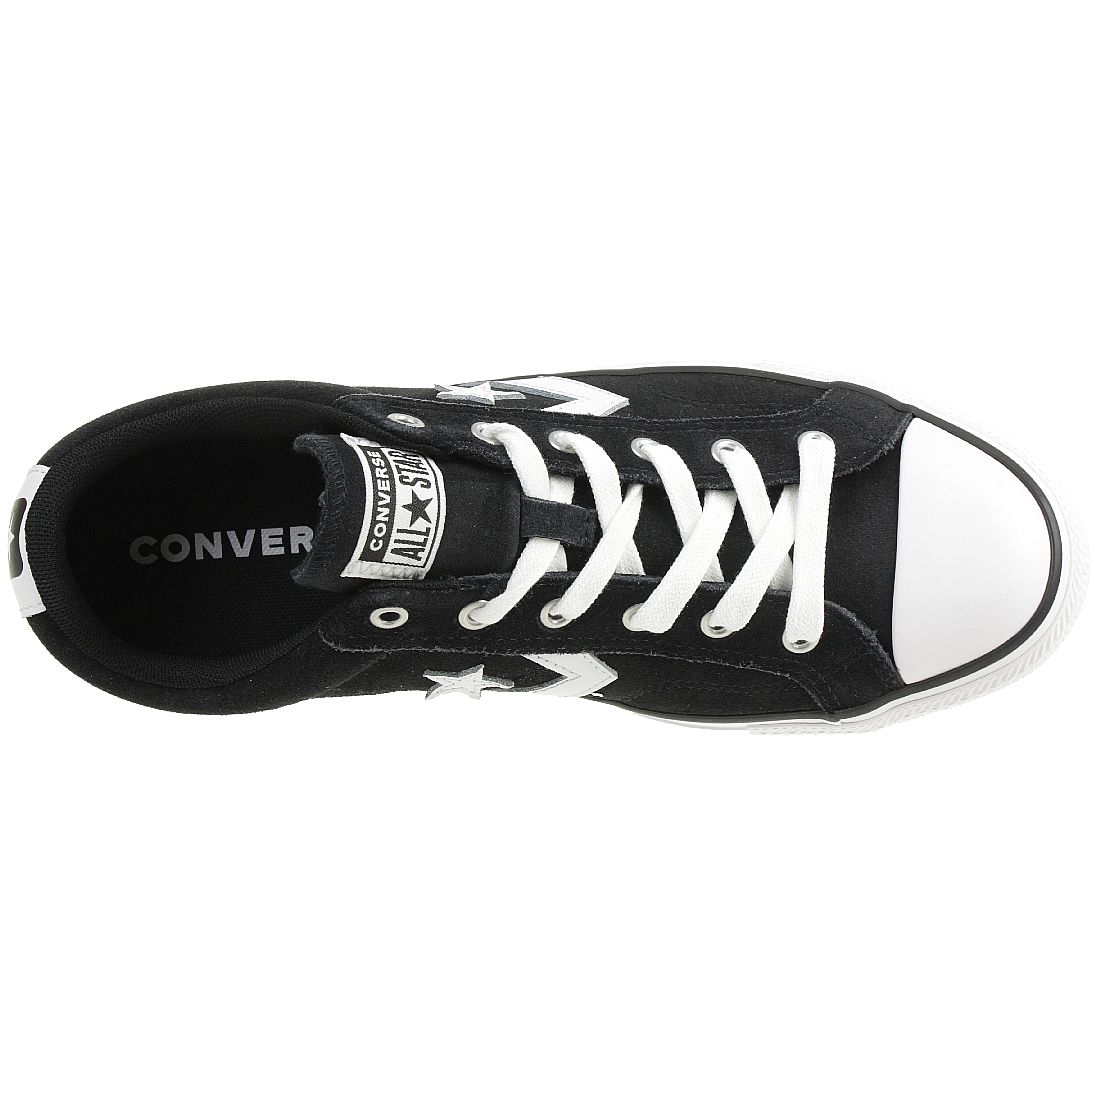 Converse STAR PLAYER OX Schuhe Sneaker Wildleder Schwarz 165466C